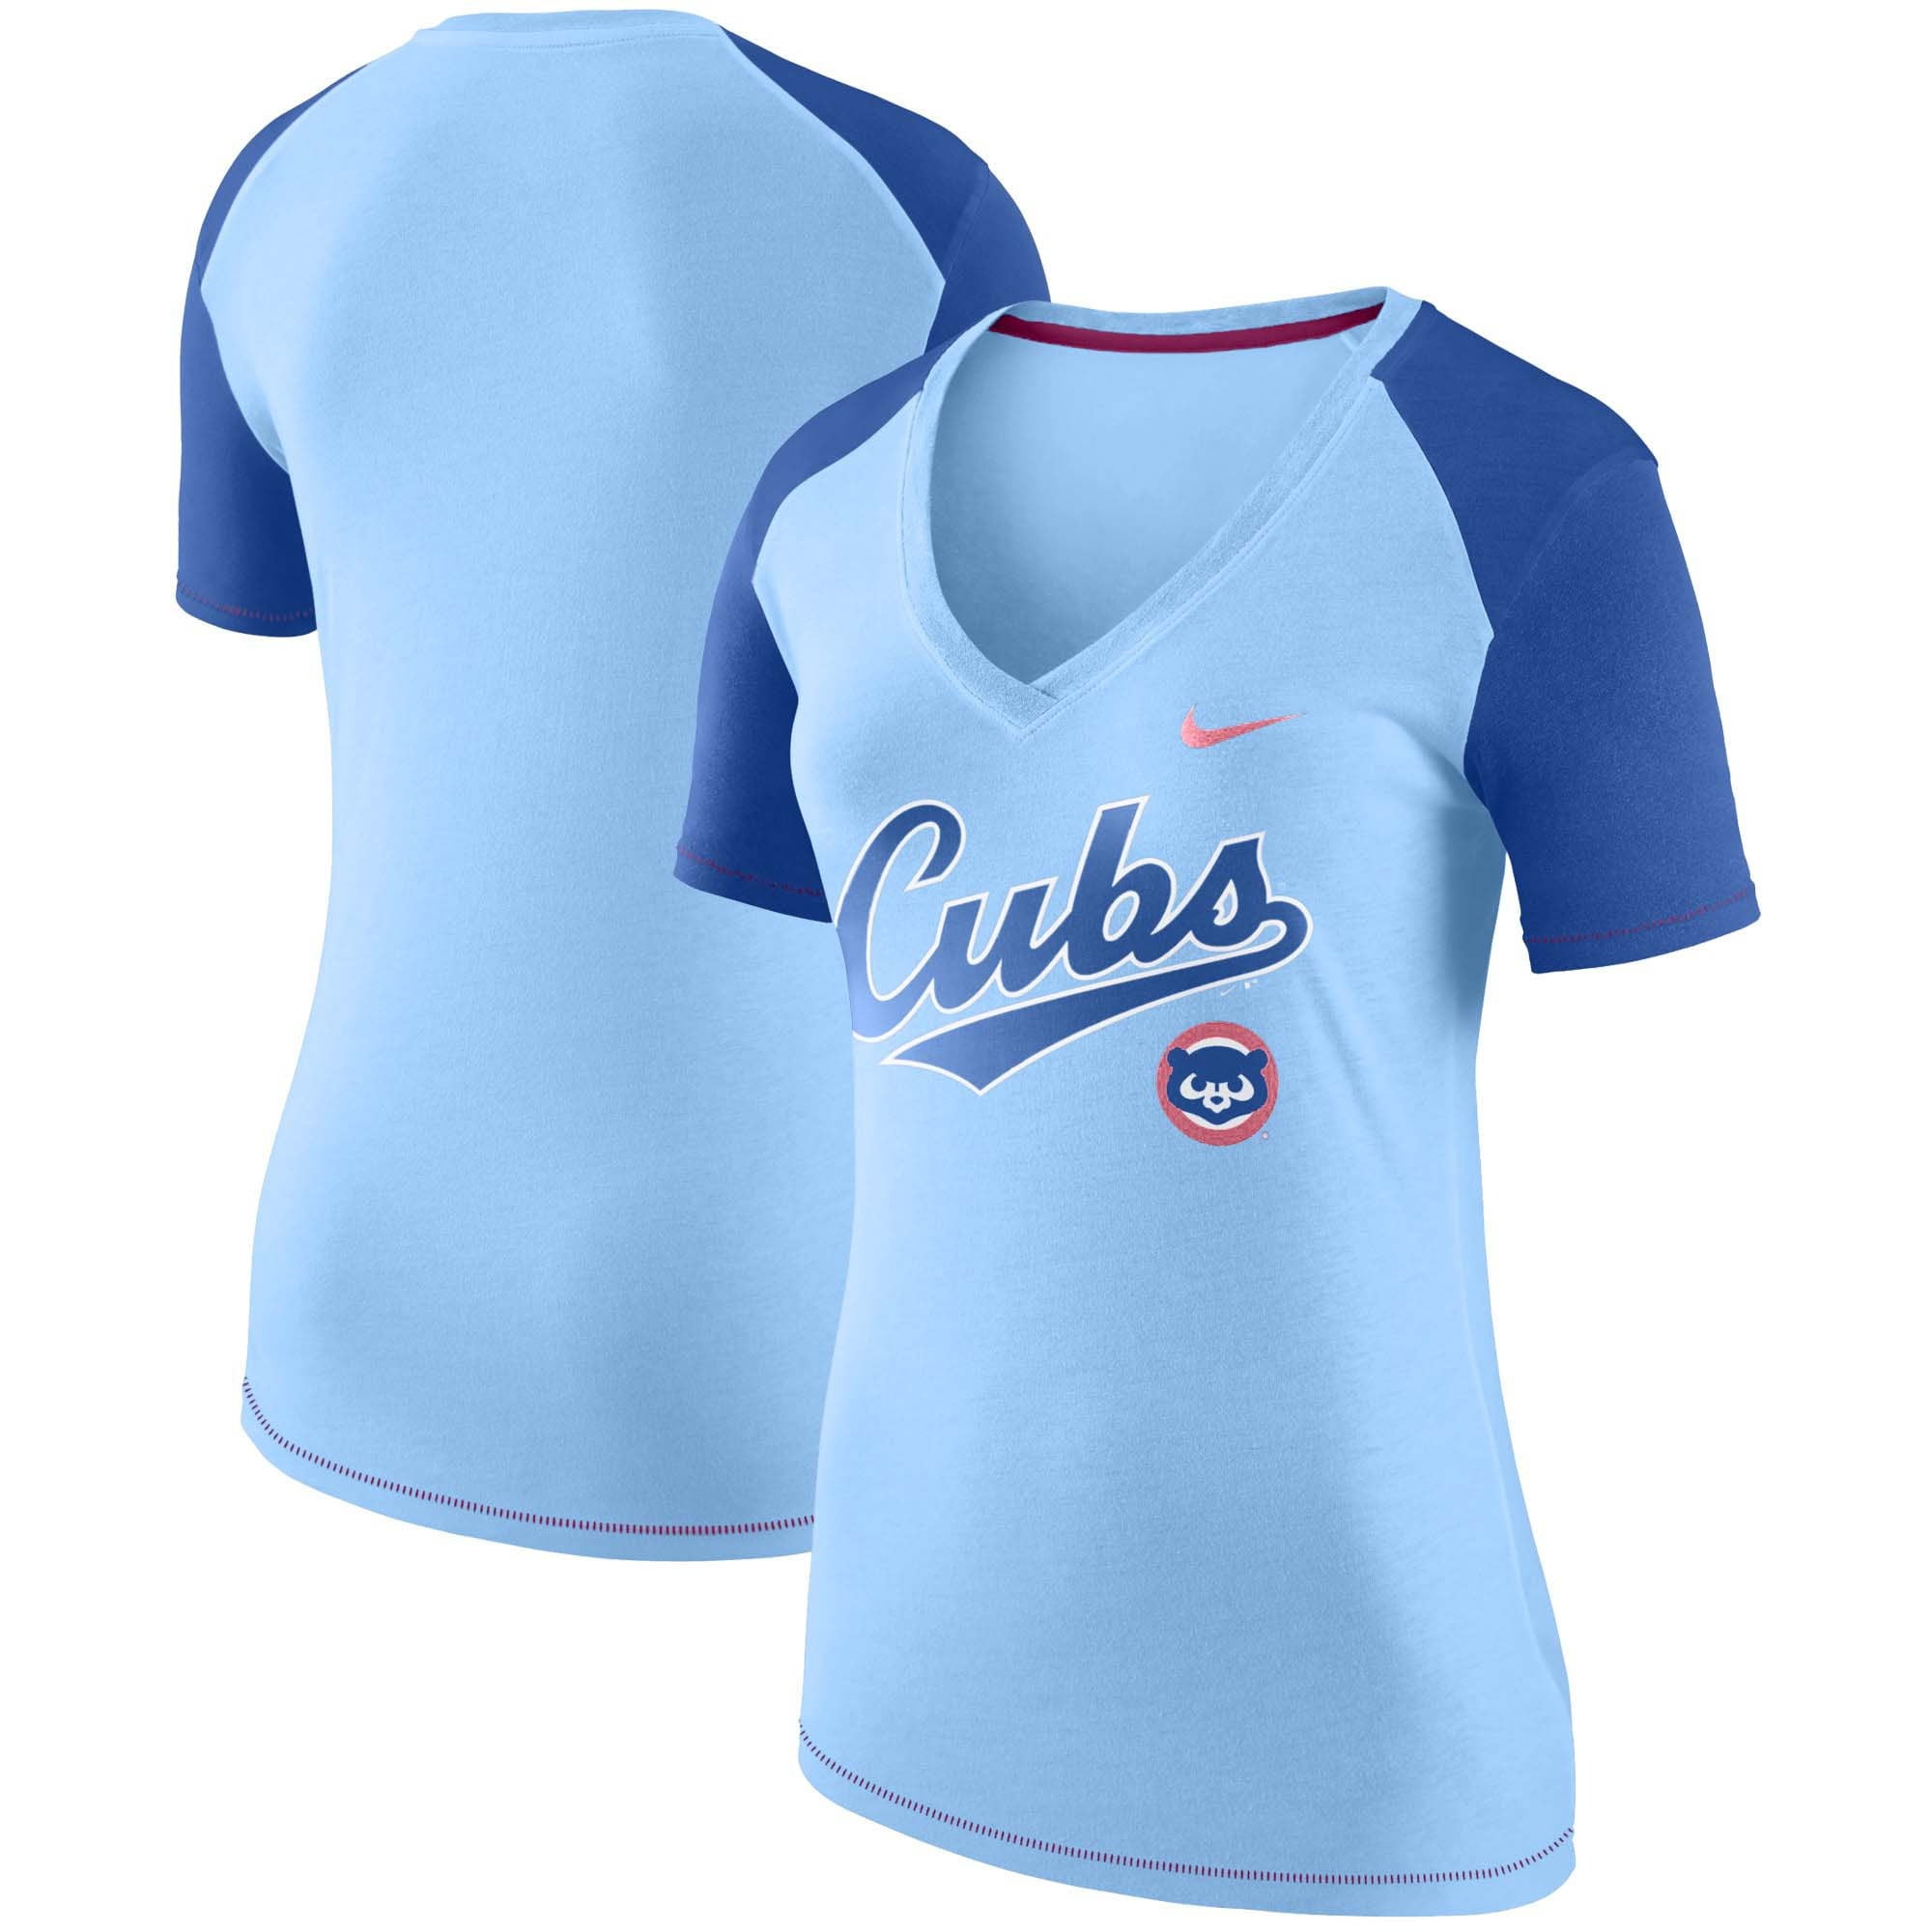 cubs light blue jersey